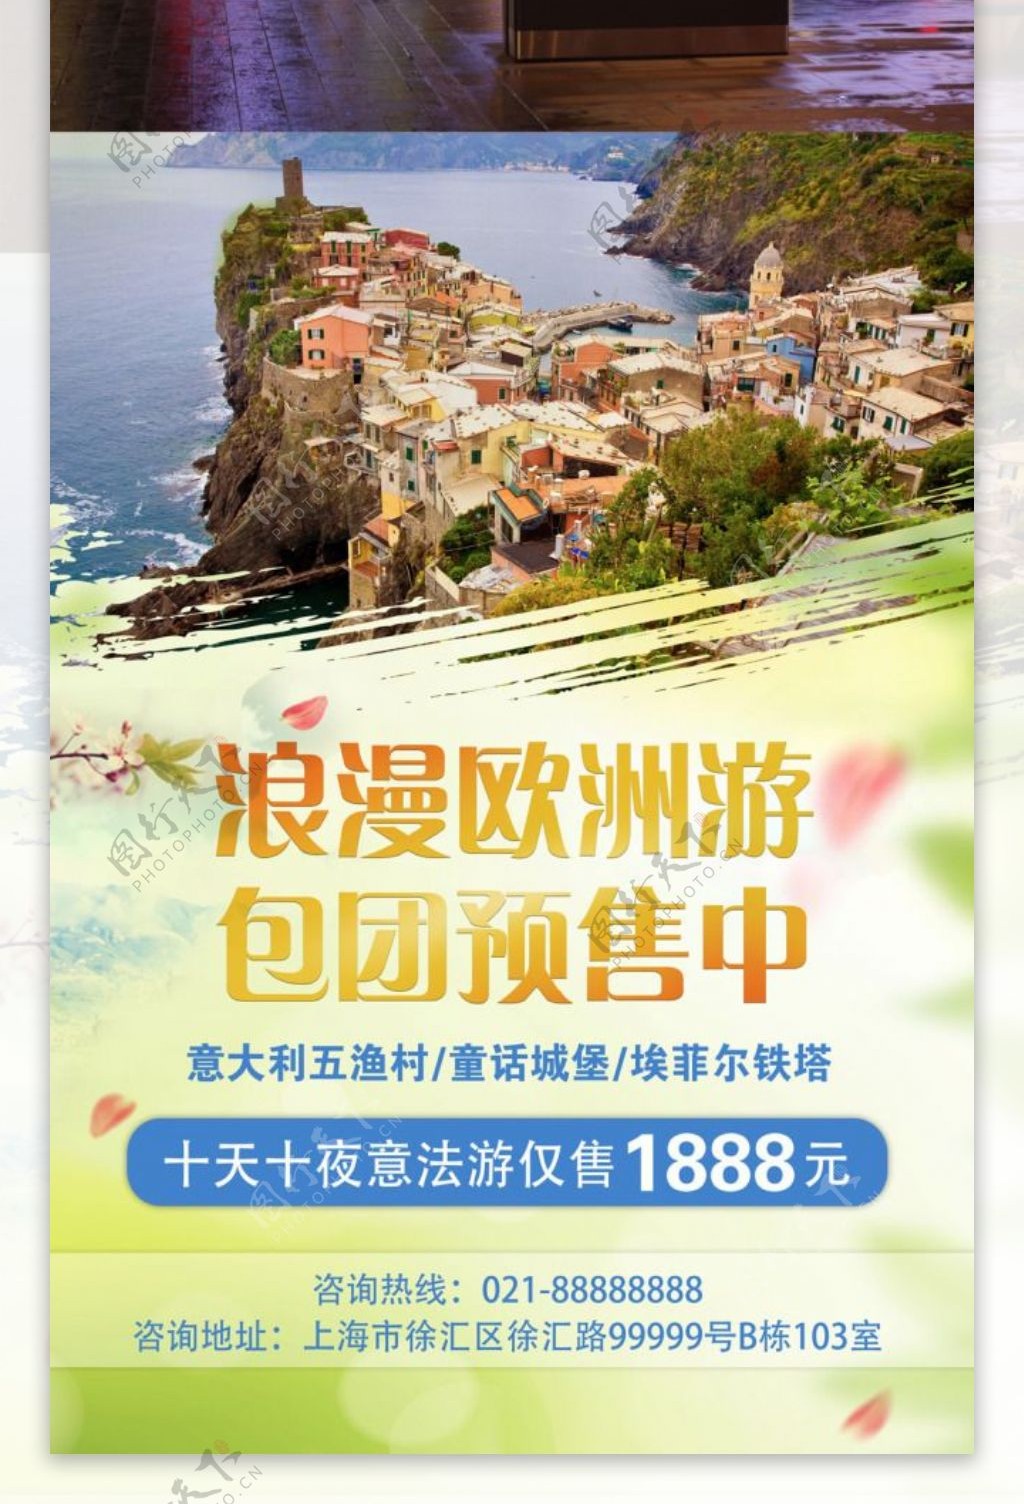 黄绿色浪漫清新旅行社推广宣传海报欧洲旅游宣传dm单页